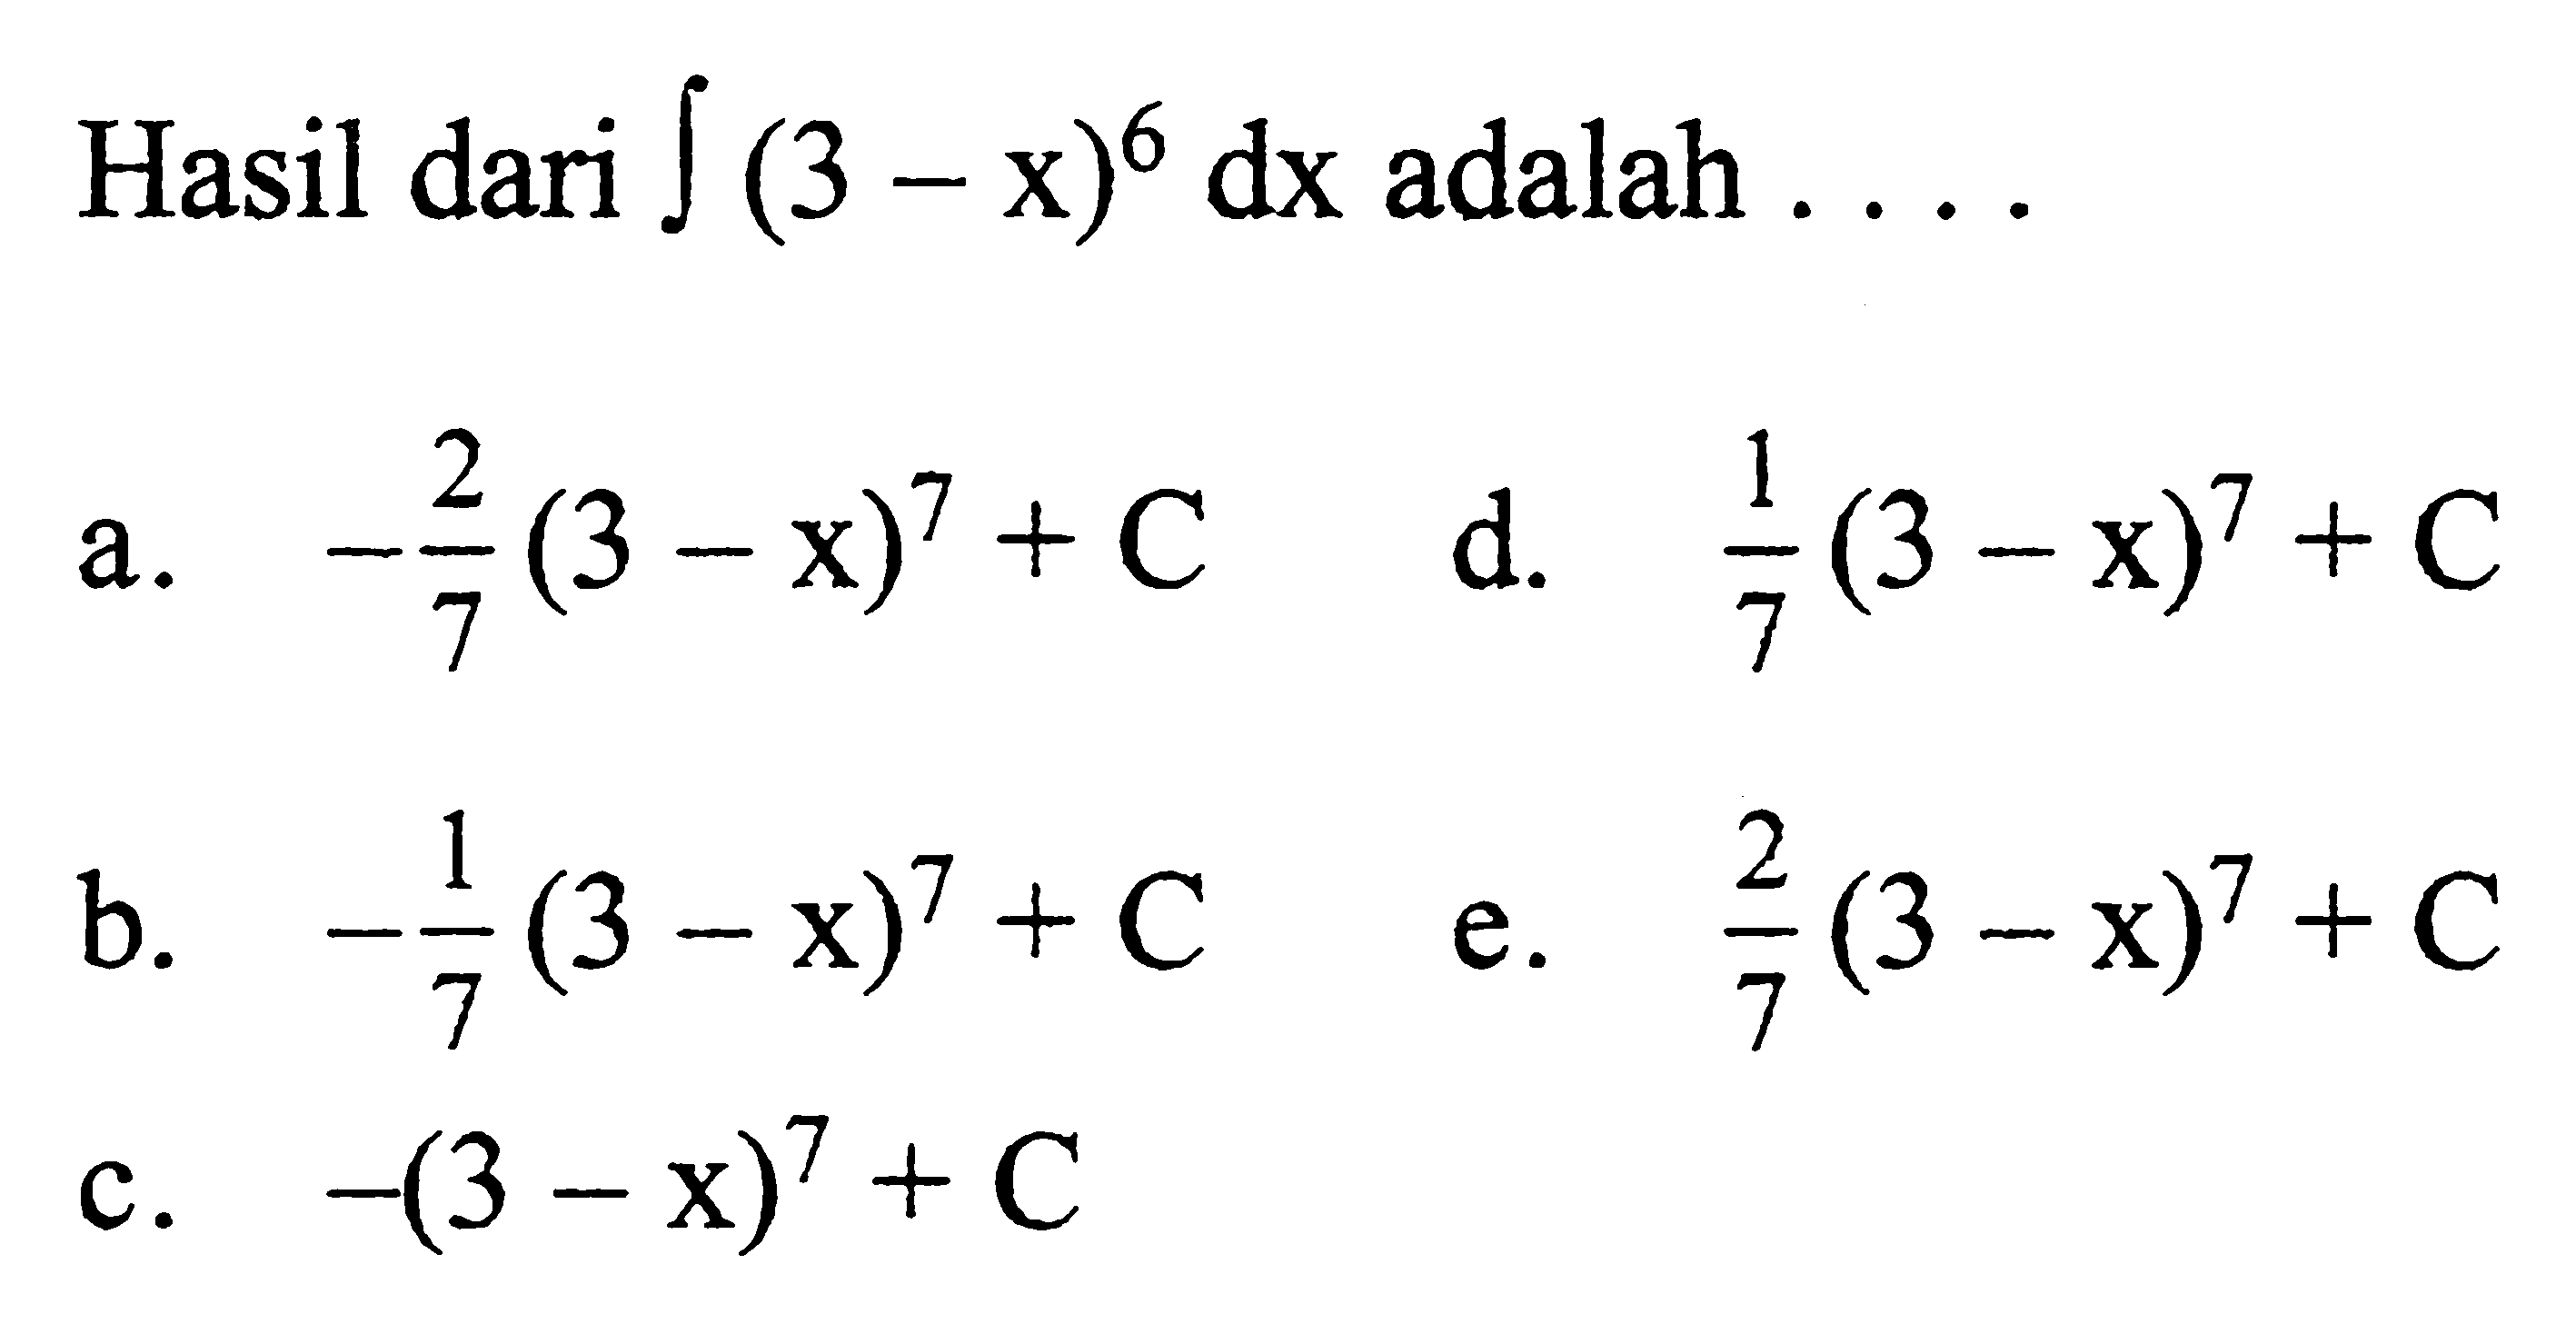 Hasil dari integral (3-x)^6 dx  adalah  .... 